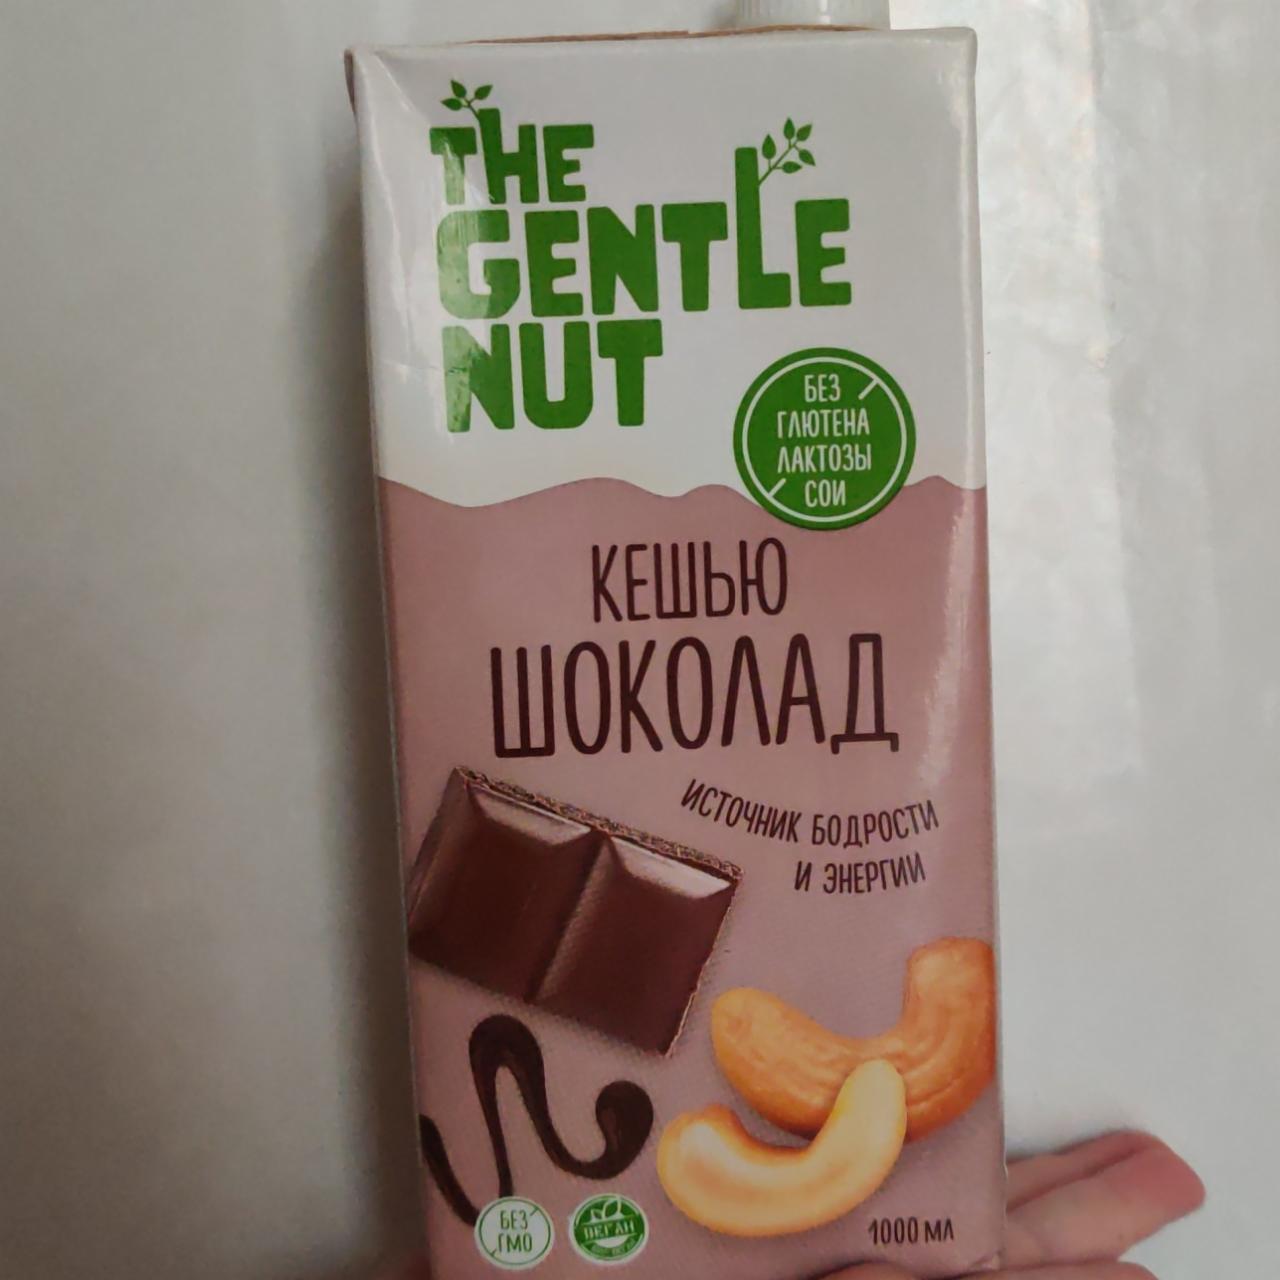 Фото - Напиток ореховый Кешью и шоколад The Gentle Nut